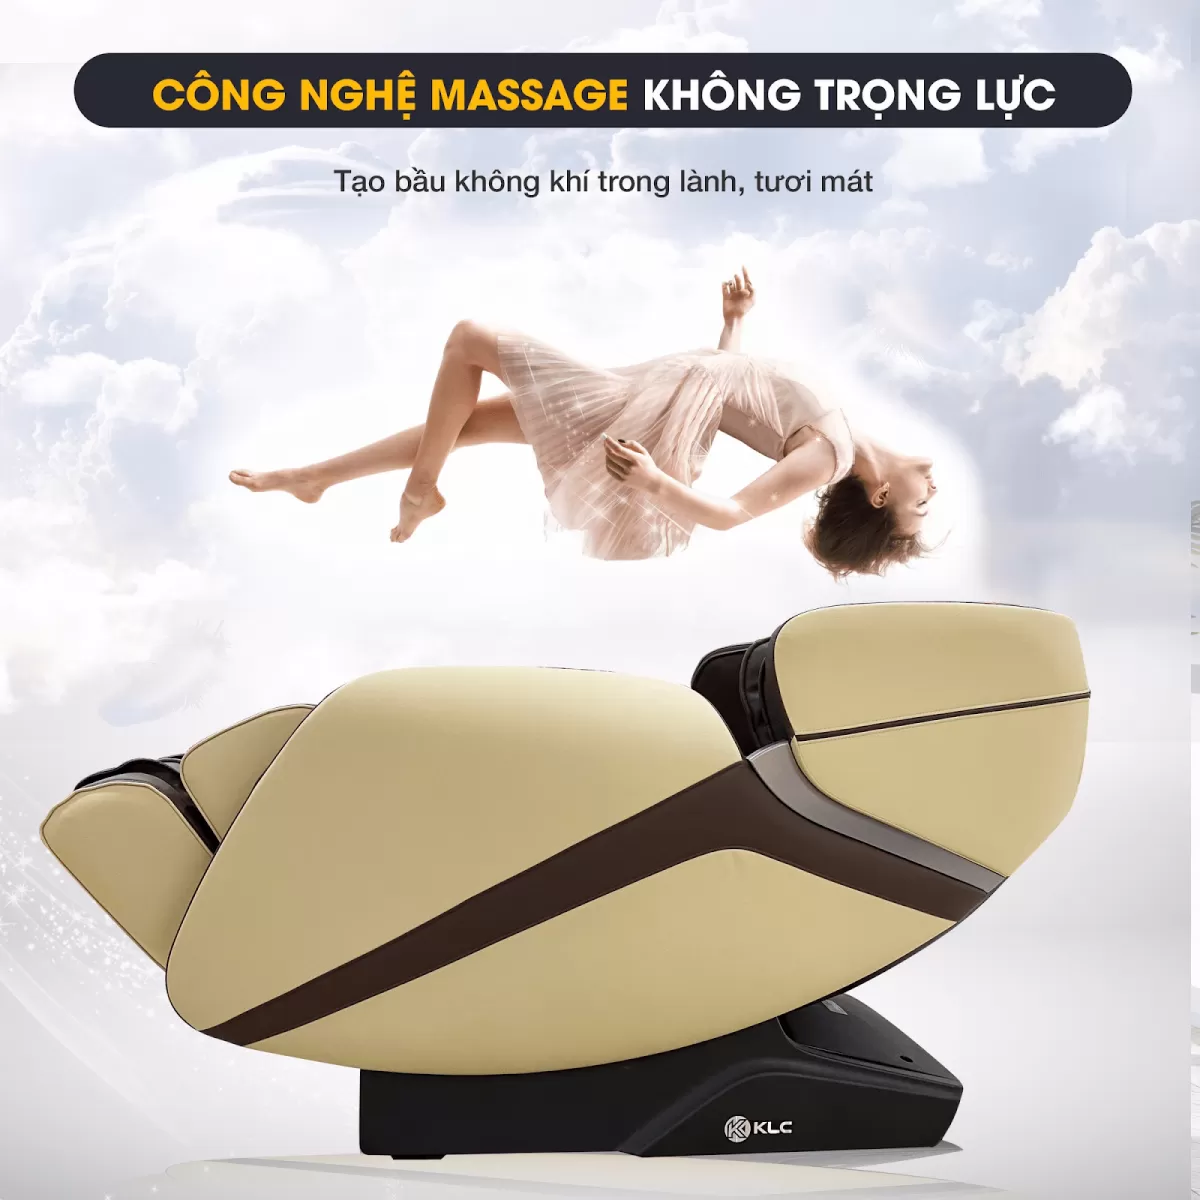 Chế độ massage không trọng lực của Ghế Massage KLC K6688